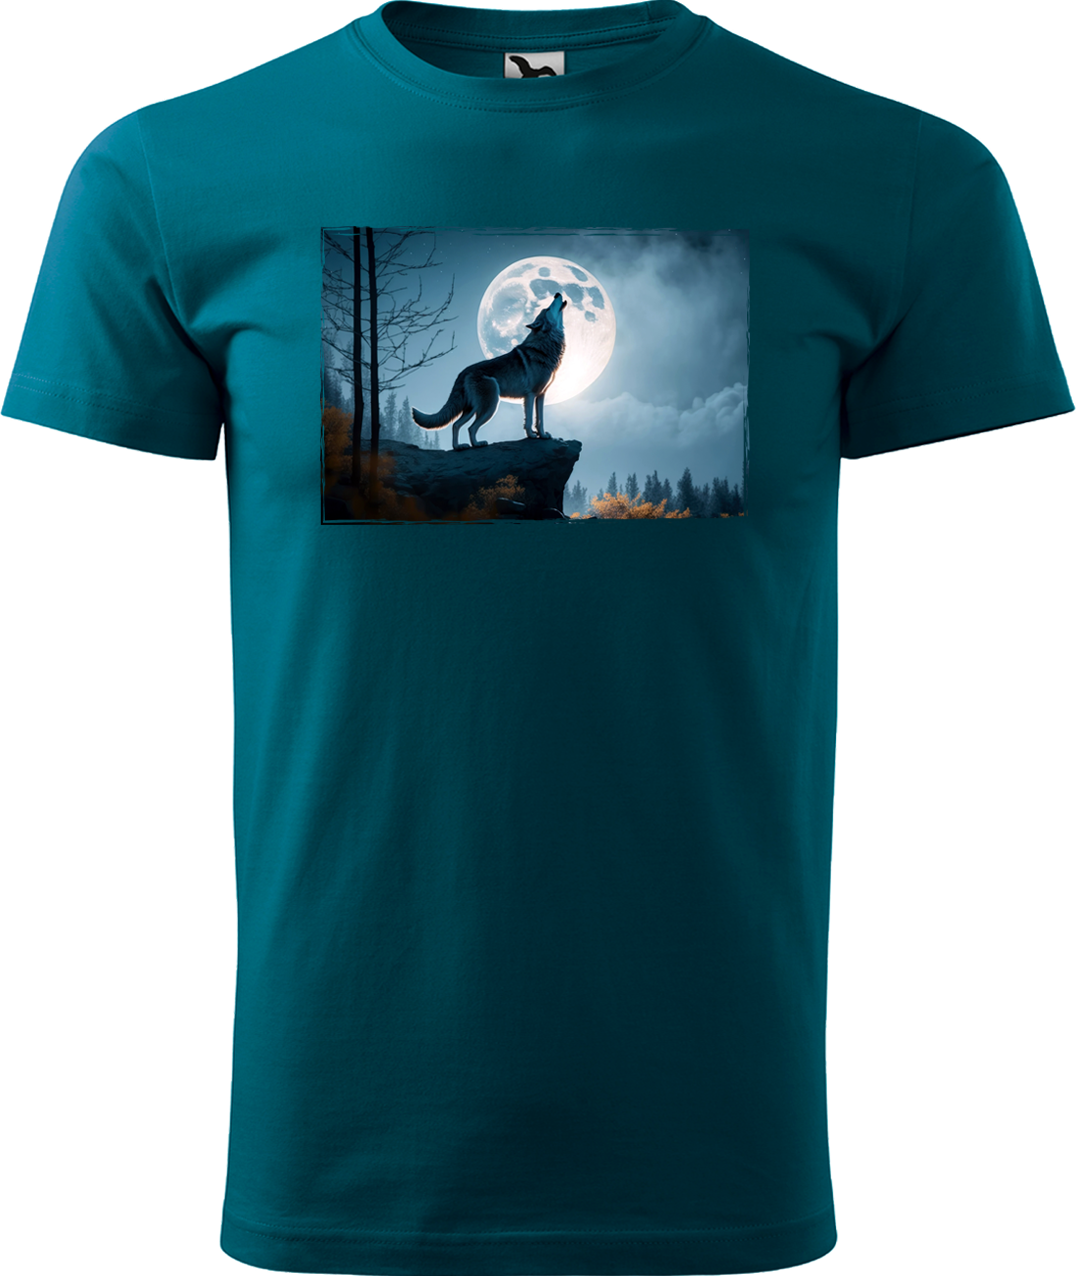 Pánské tričko s vlkem - Vyjící vlk Velikost: M, Barva: Petrolejová (93)